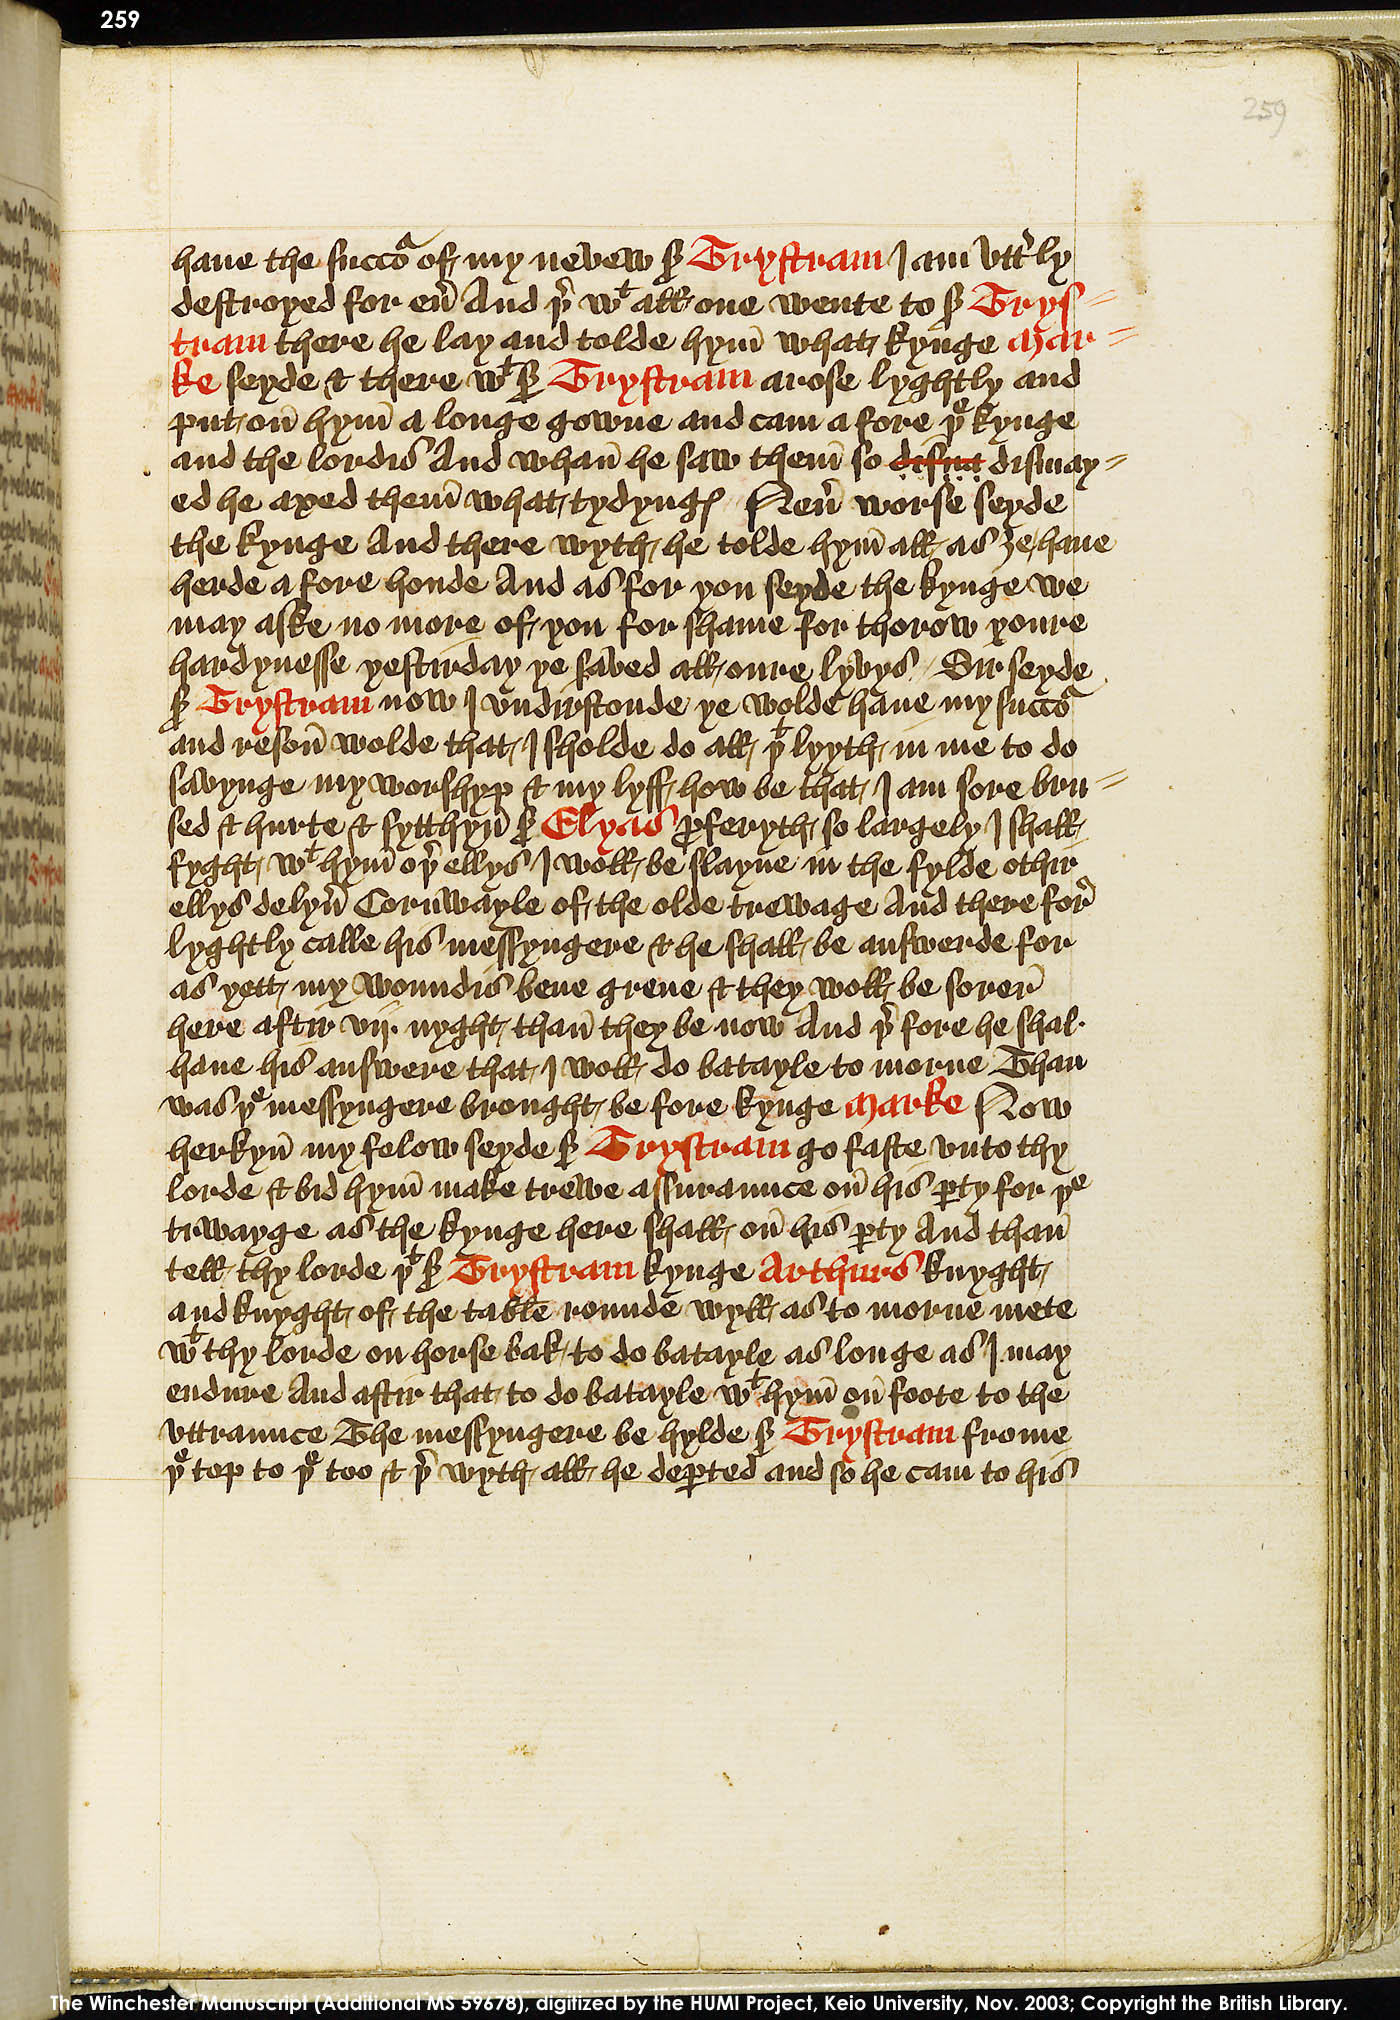 Folio 259r